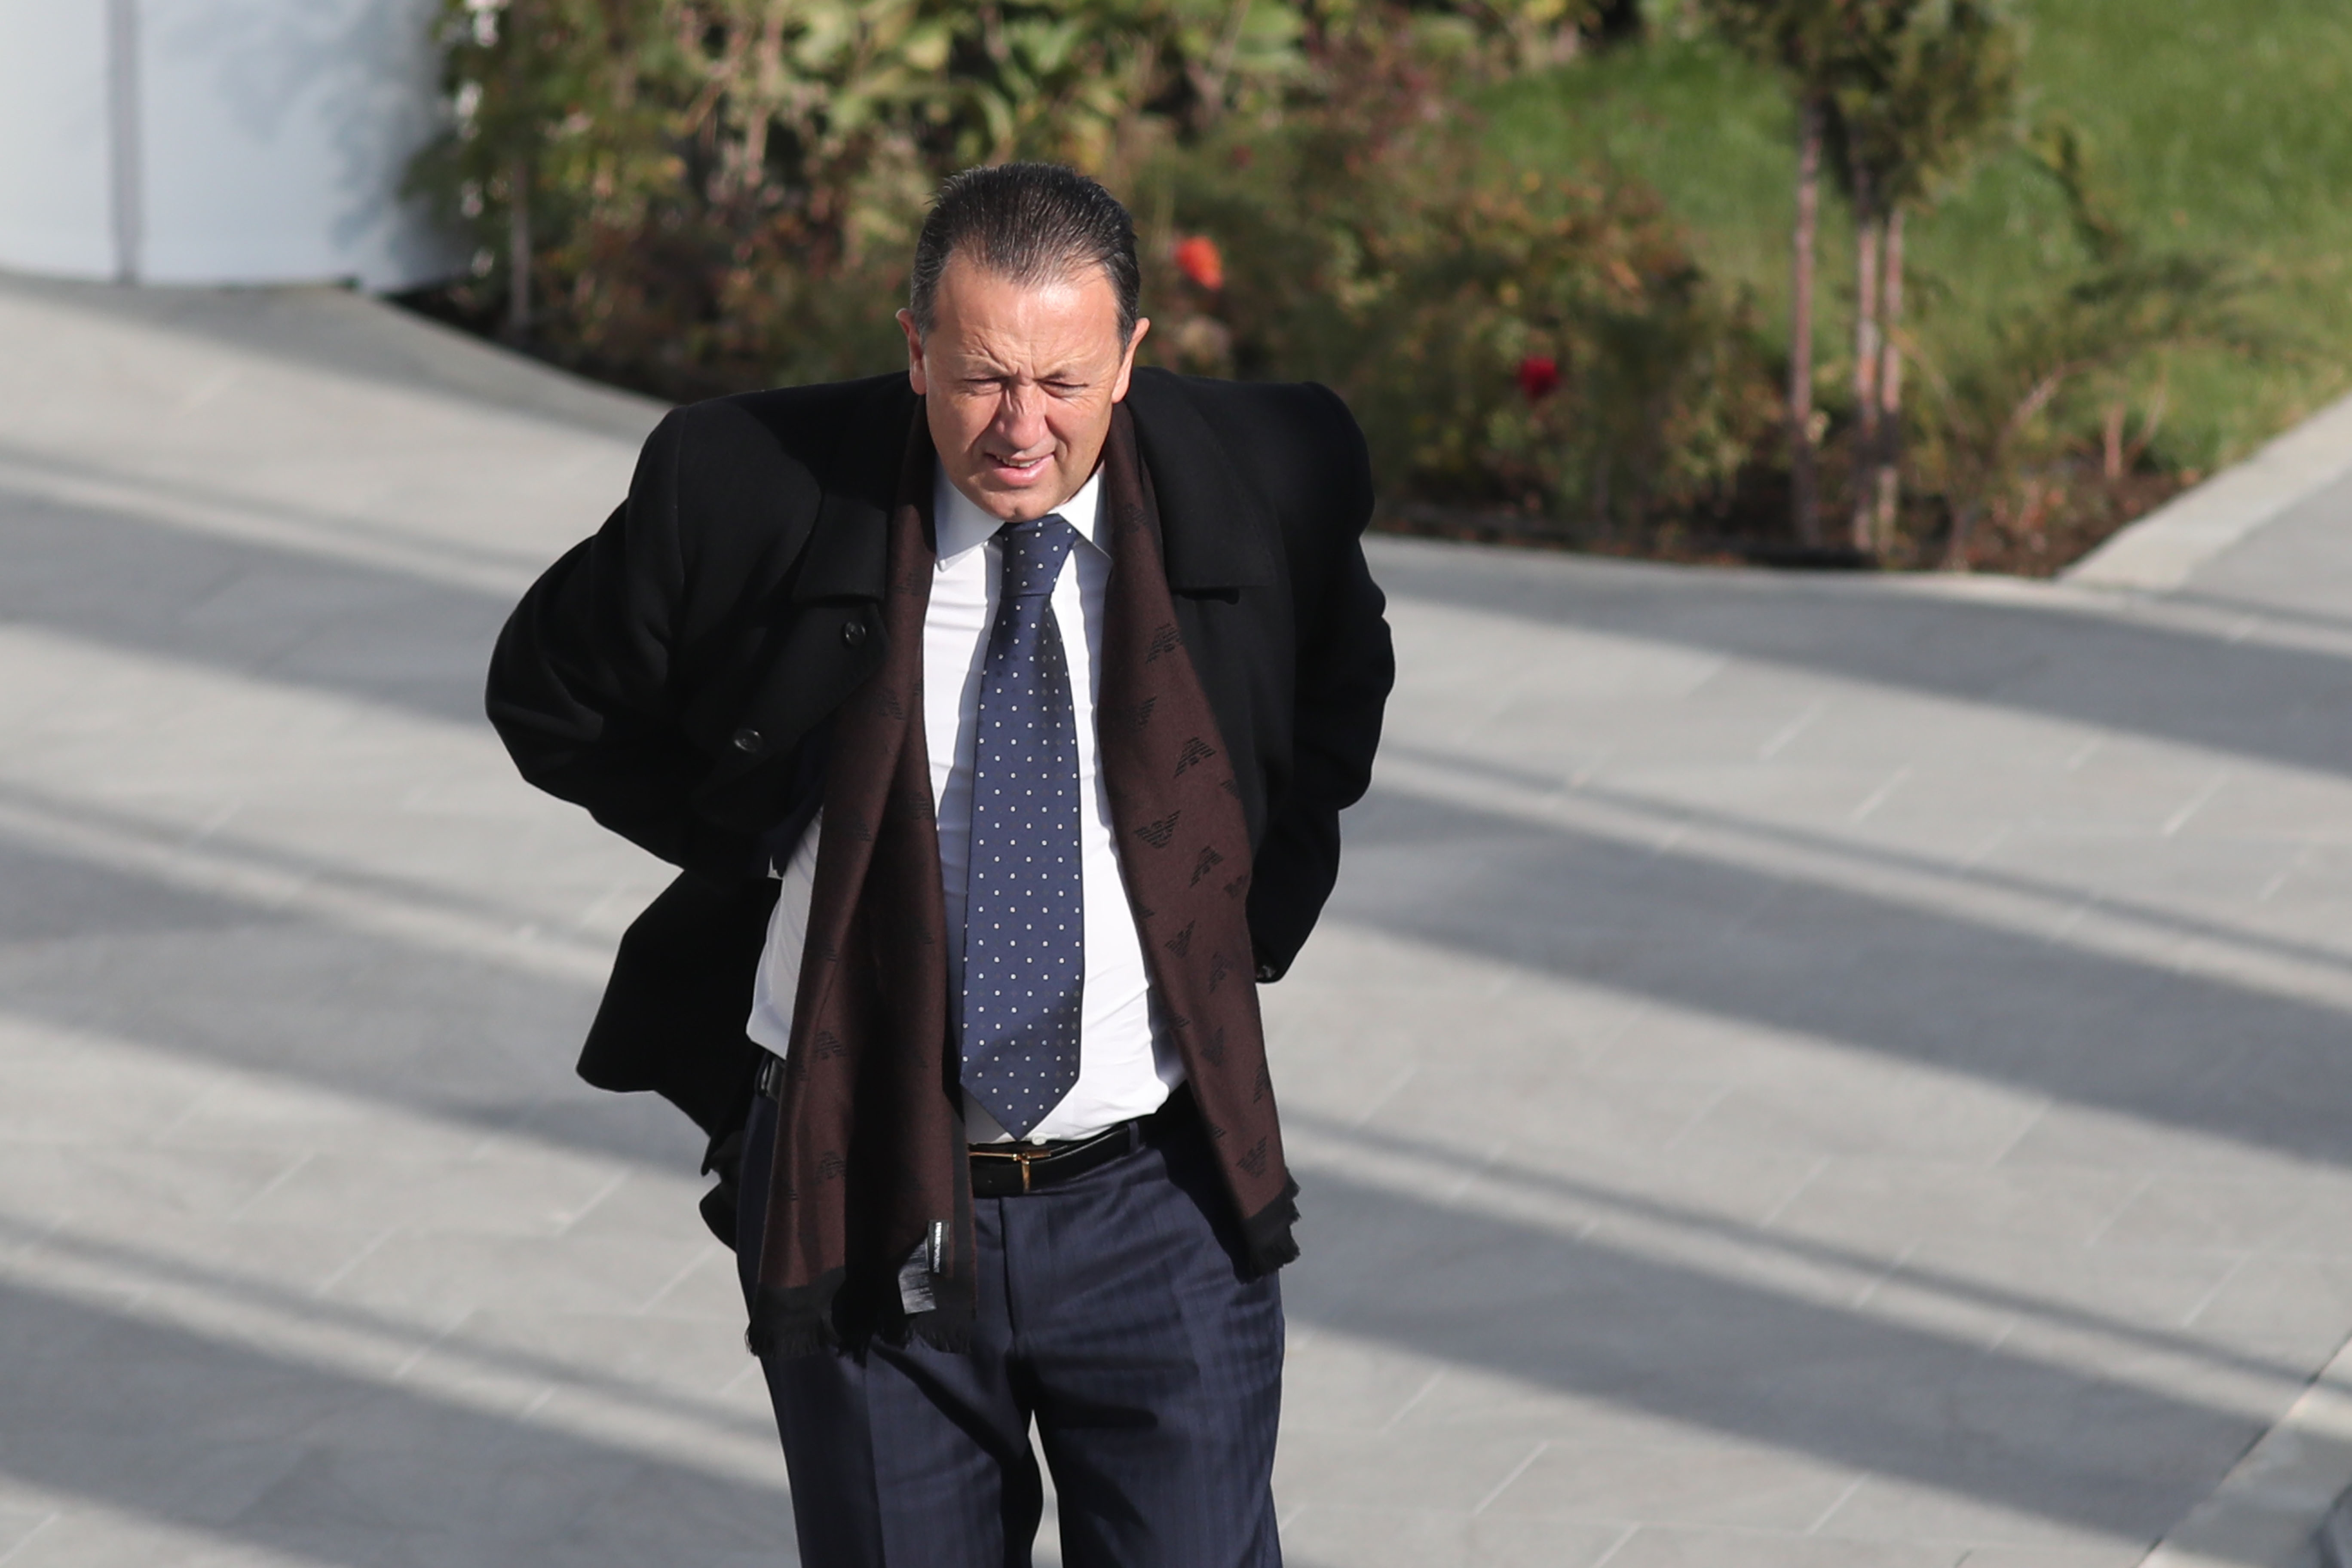 Вицепрезидентът на БФС Атанас Фурнаджиев също подаде оставка. Той изпрати